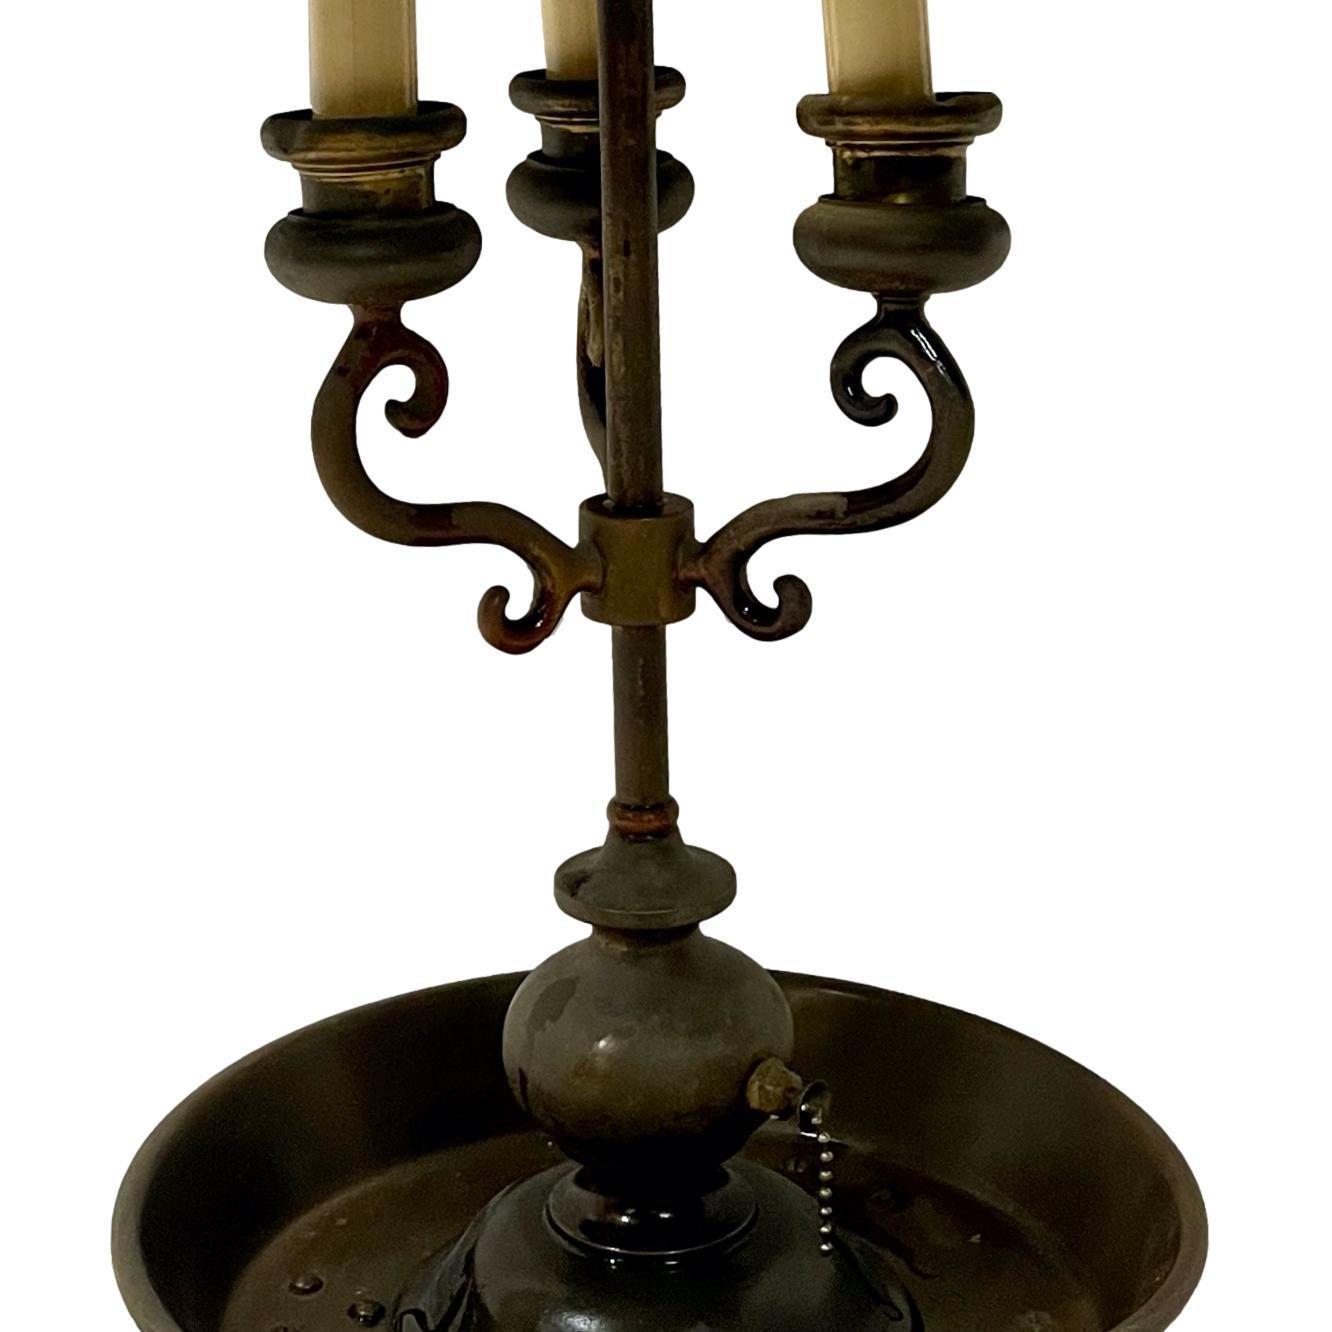 Lampe anglaise en bronze patiné des années 1940 avec abat-jour en tôle.

Mesures :
Hauteur : 27.5